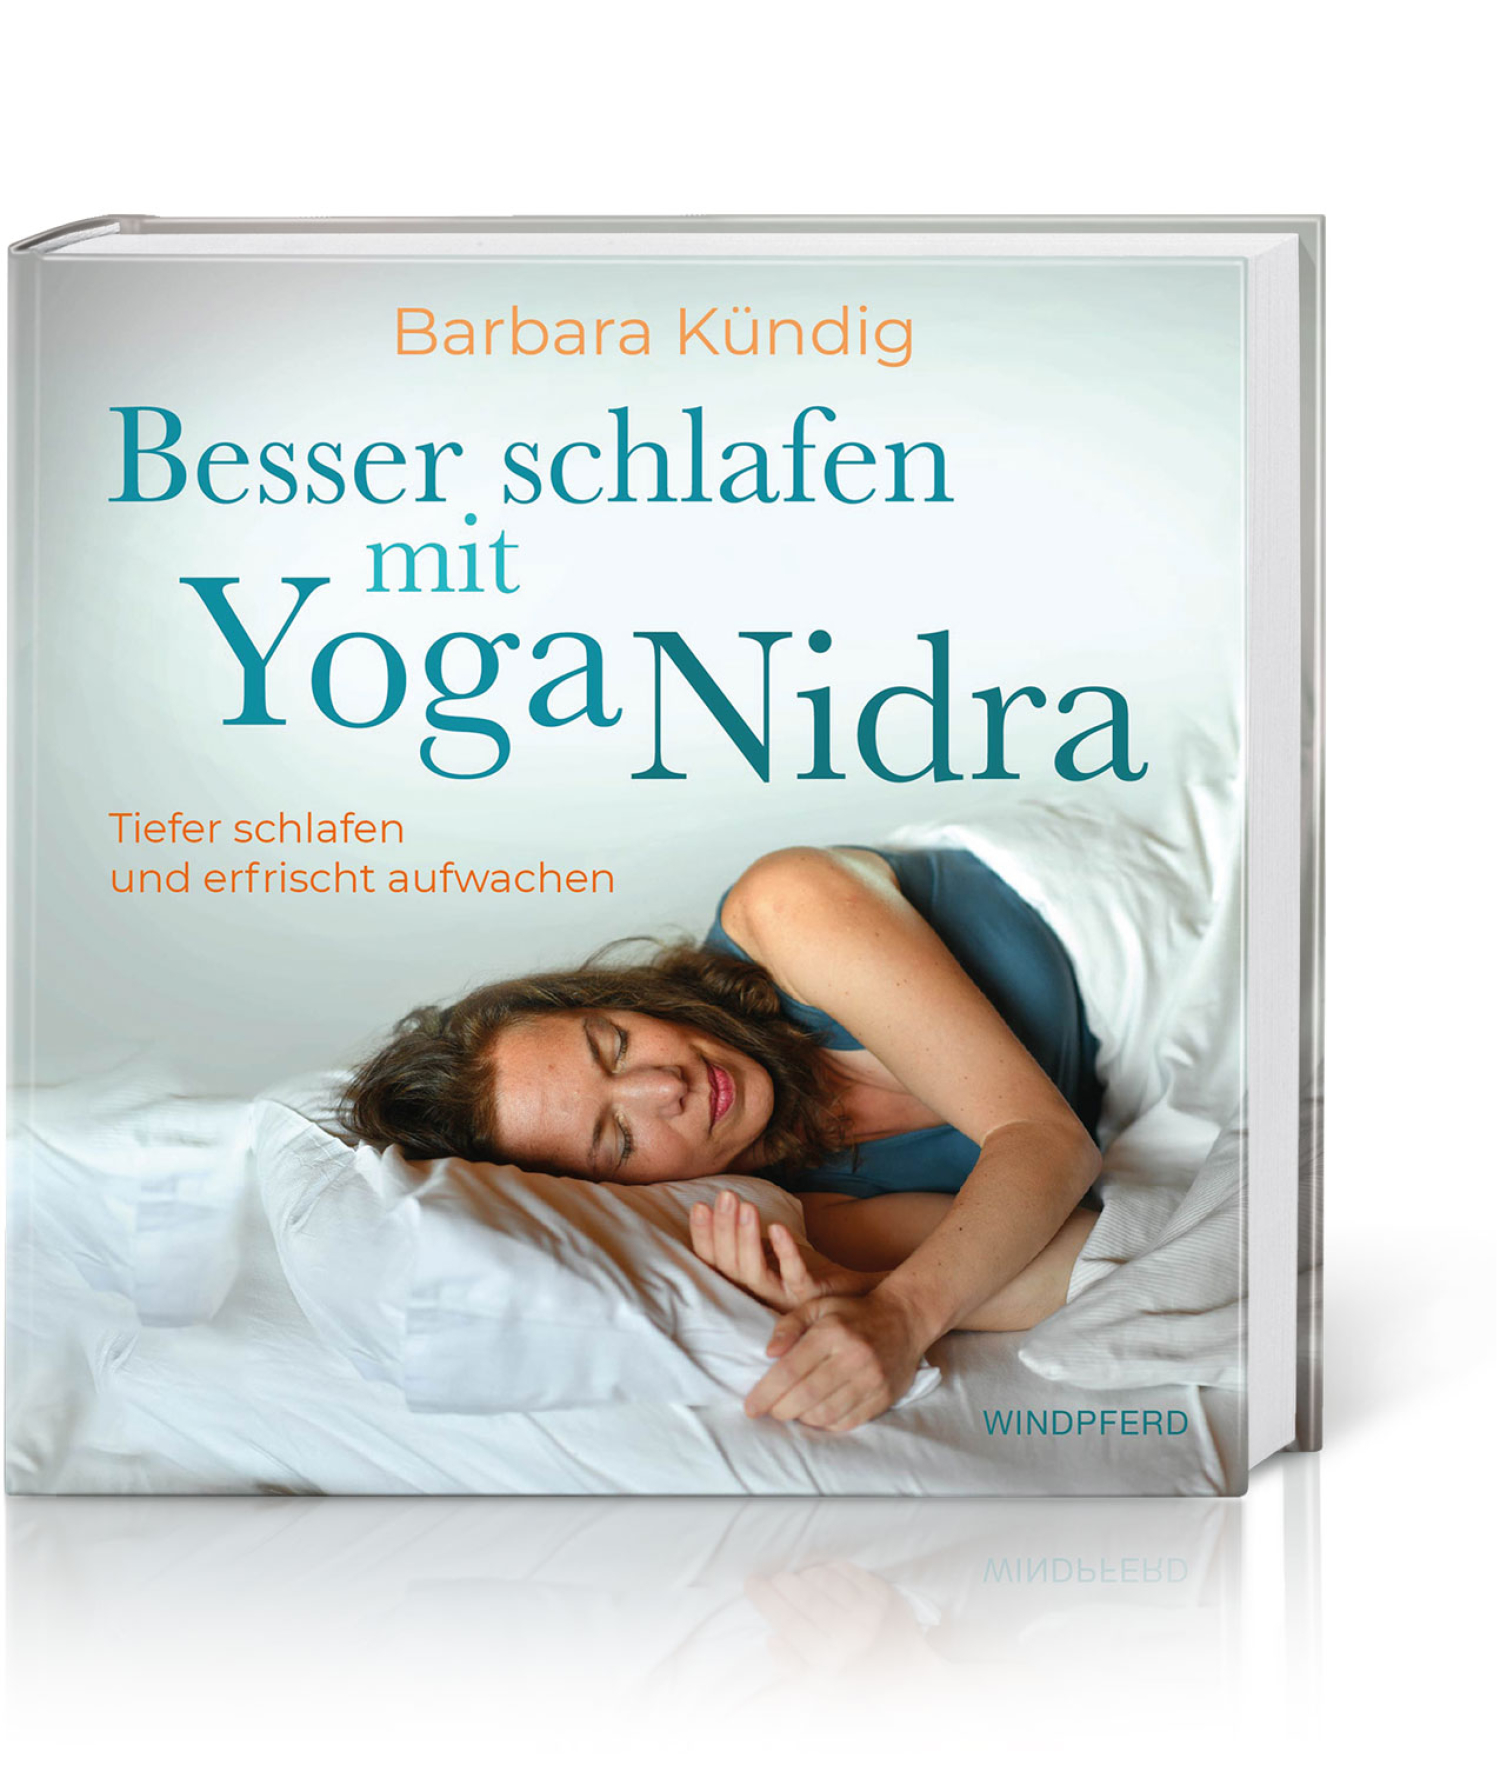 Besser schlafen mit Yoga Nidra, Produktbild 1